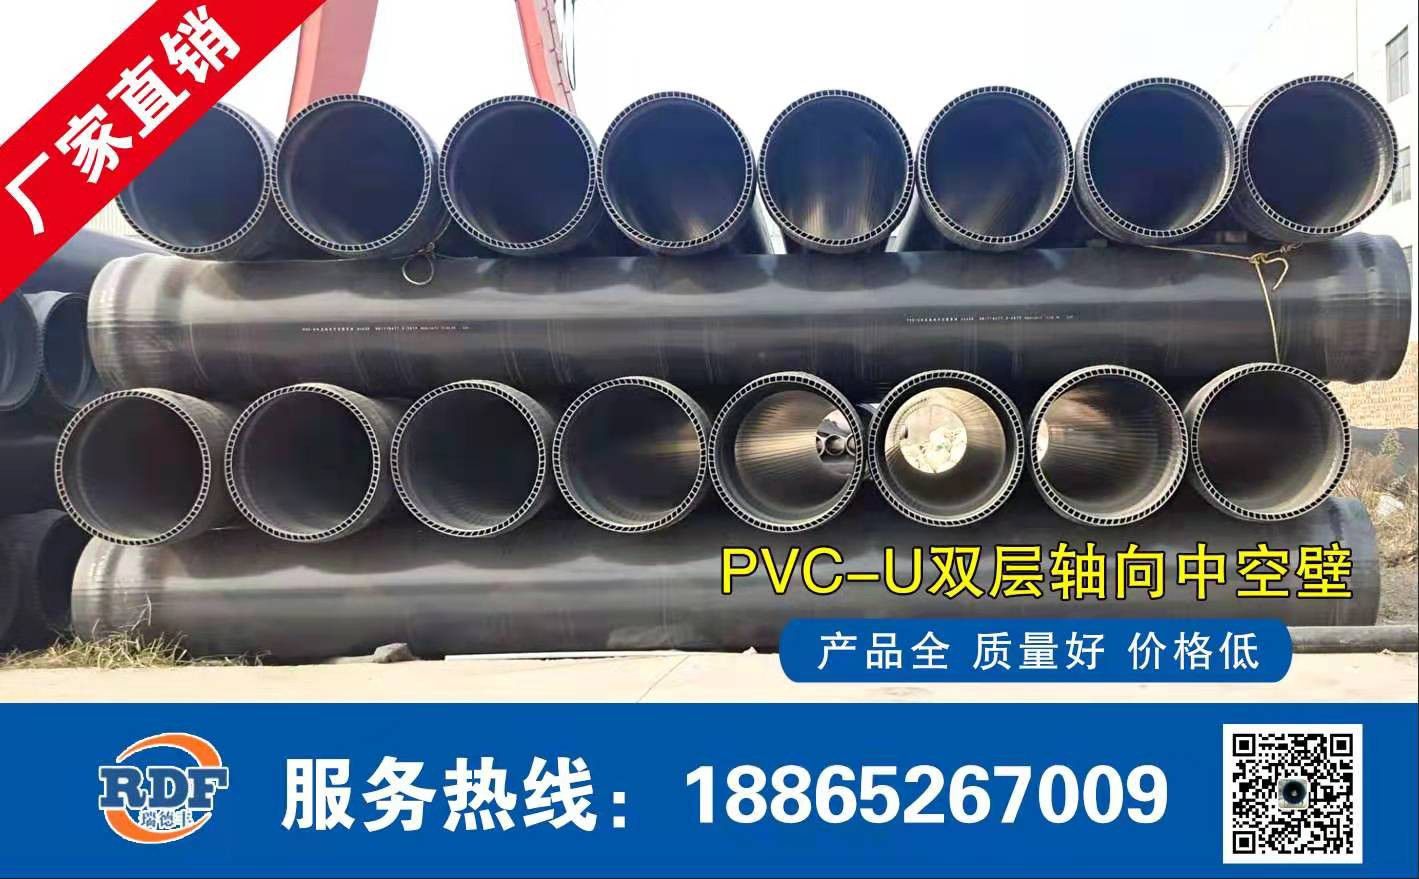 天津北辰区PVC-U给水管份场价格将止跌企稳